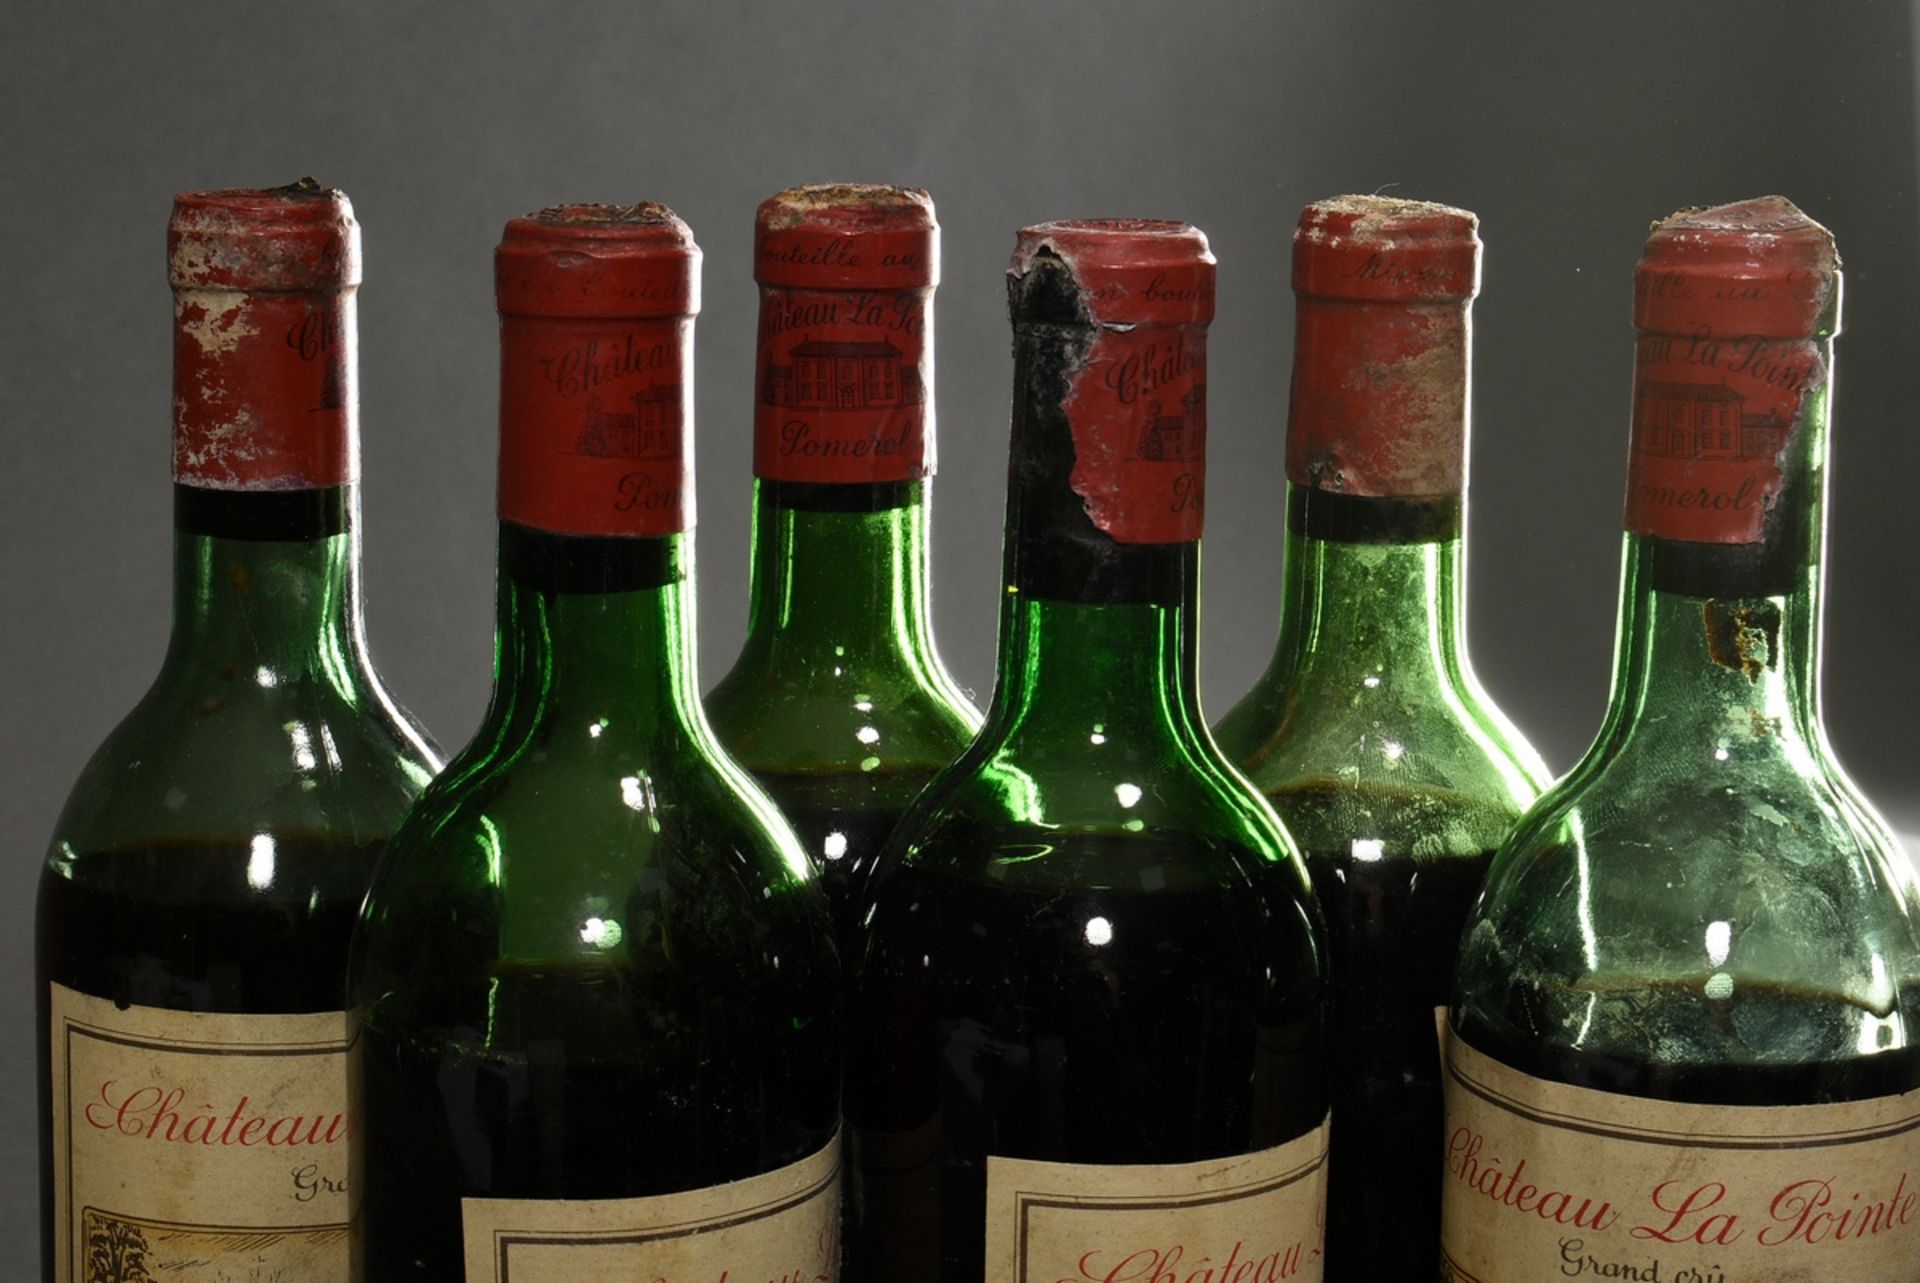 6 Flaschen 1967 Chateau La Pointe grand cru, mebac, Pomerol, Frankreich, Rotwein, 0,75l, durchgehen - Bild 5 aus 6